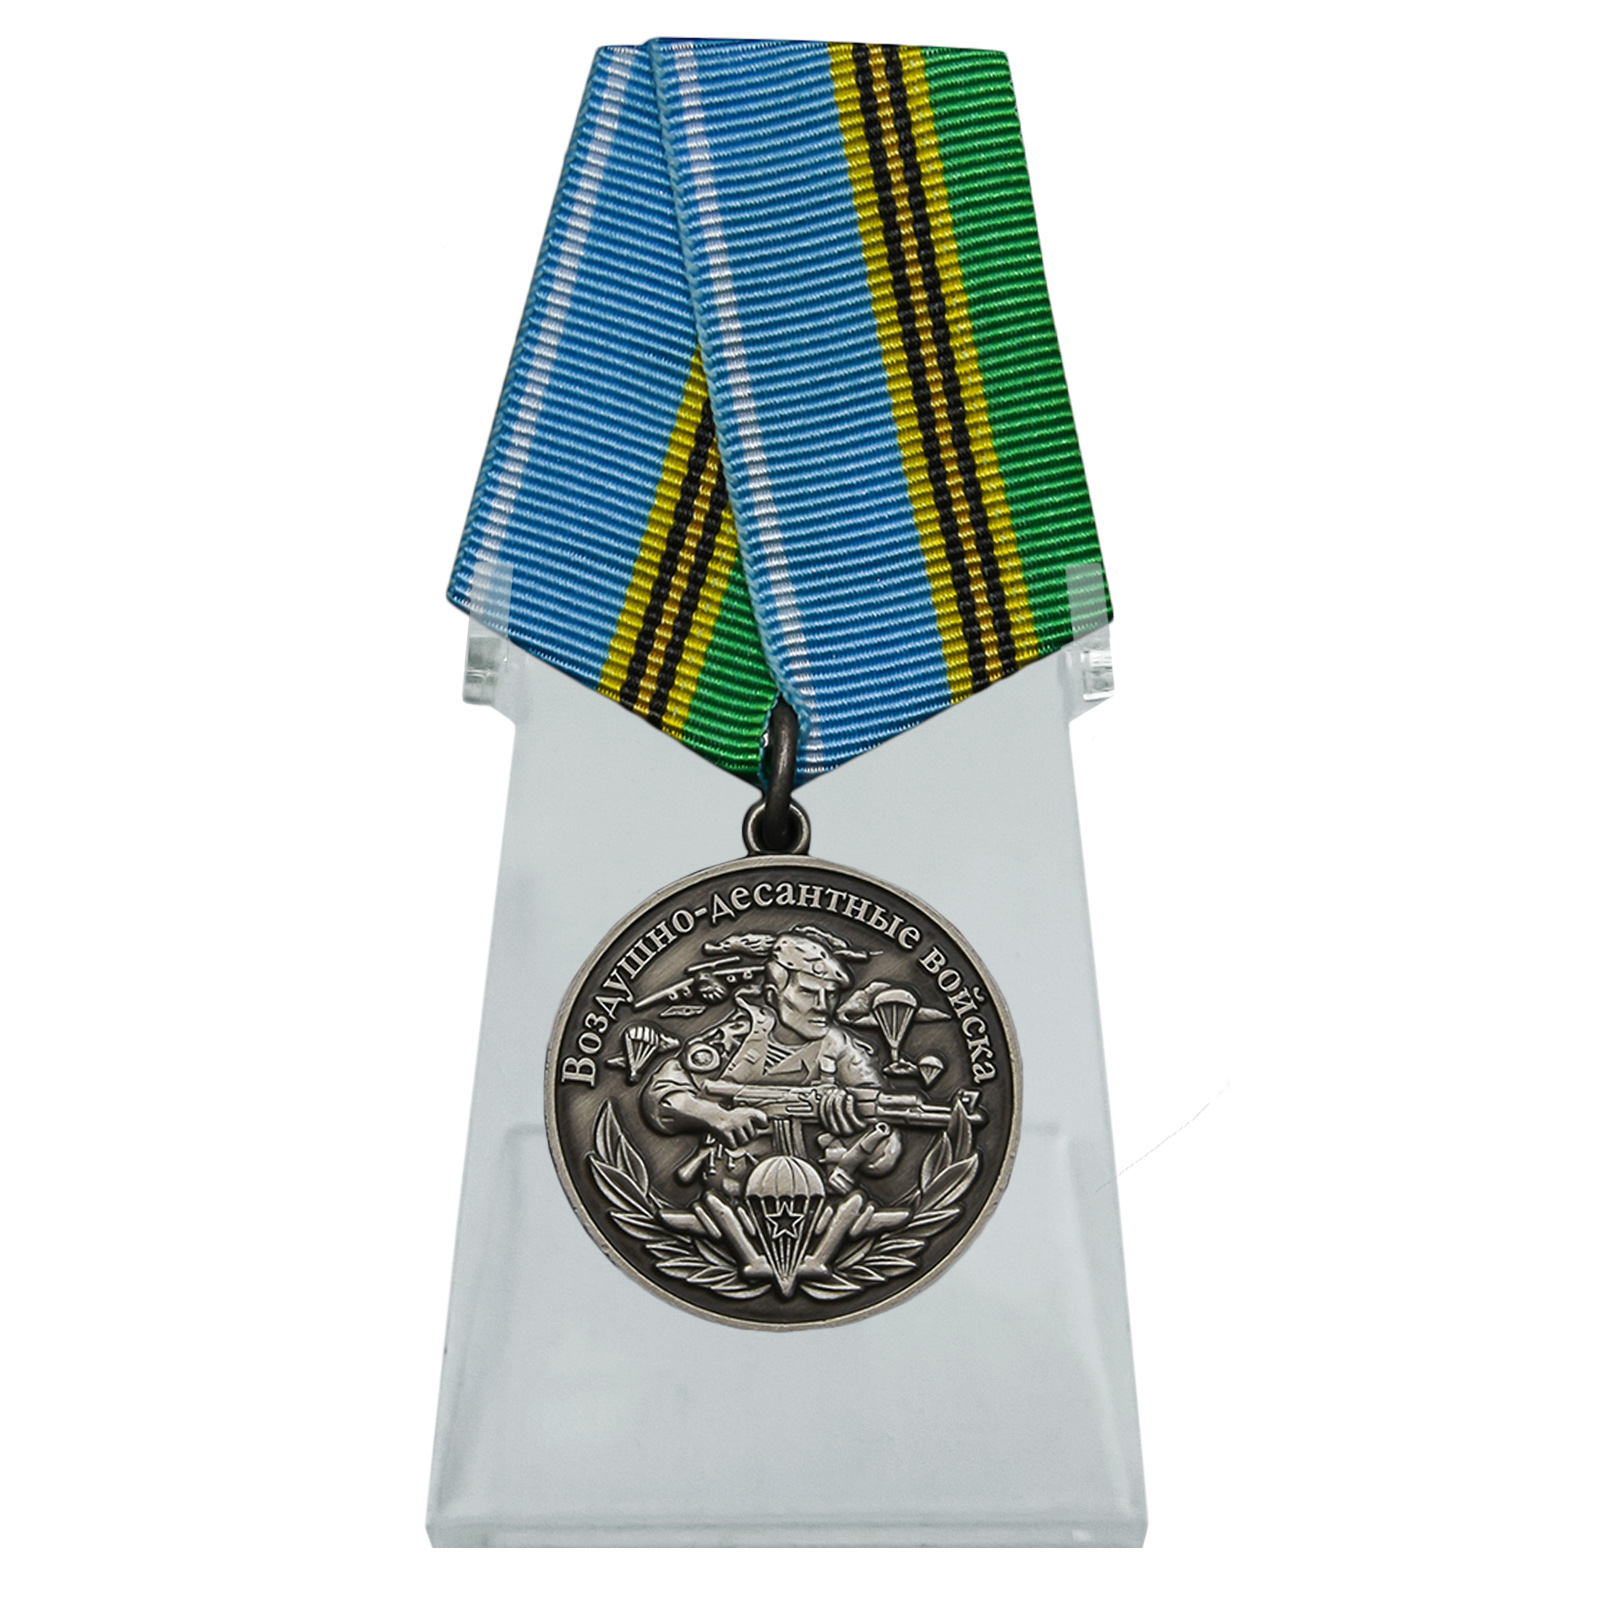 Купить медаль Воздушно-десантных войск Никто, кроме нас на подставке в подарок